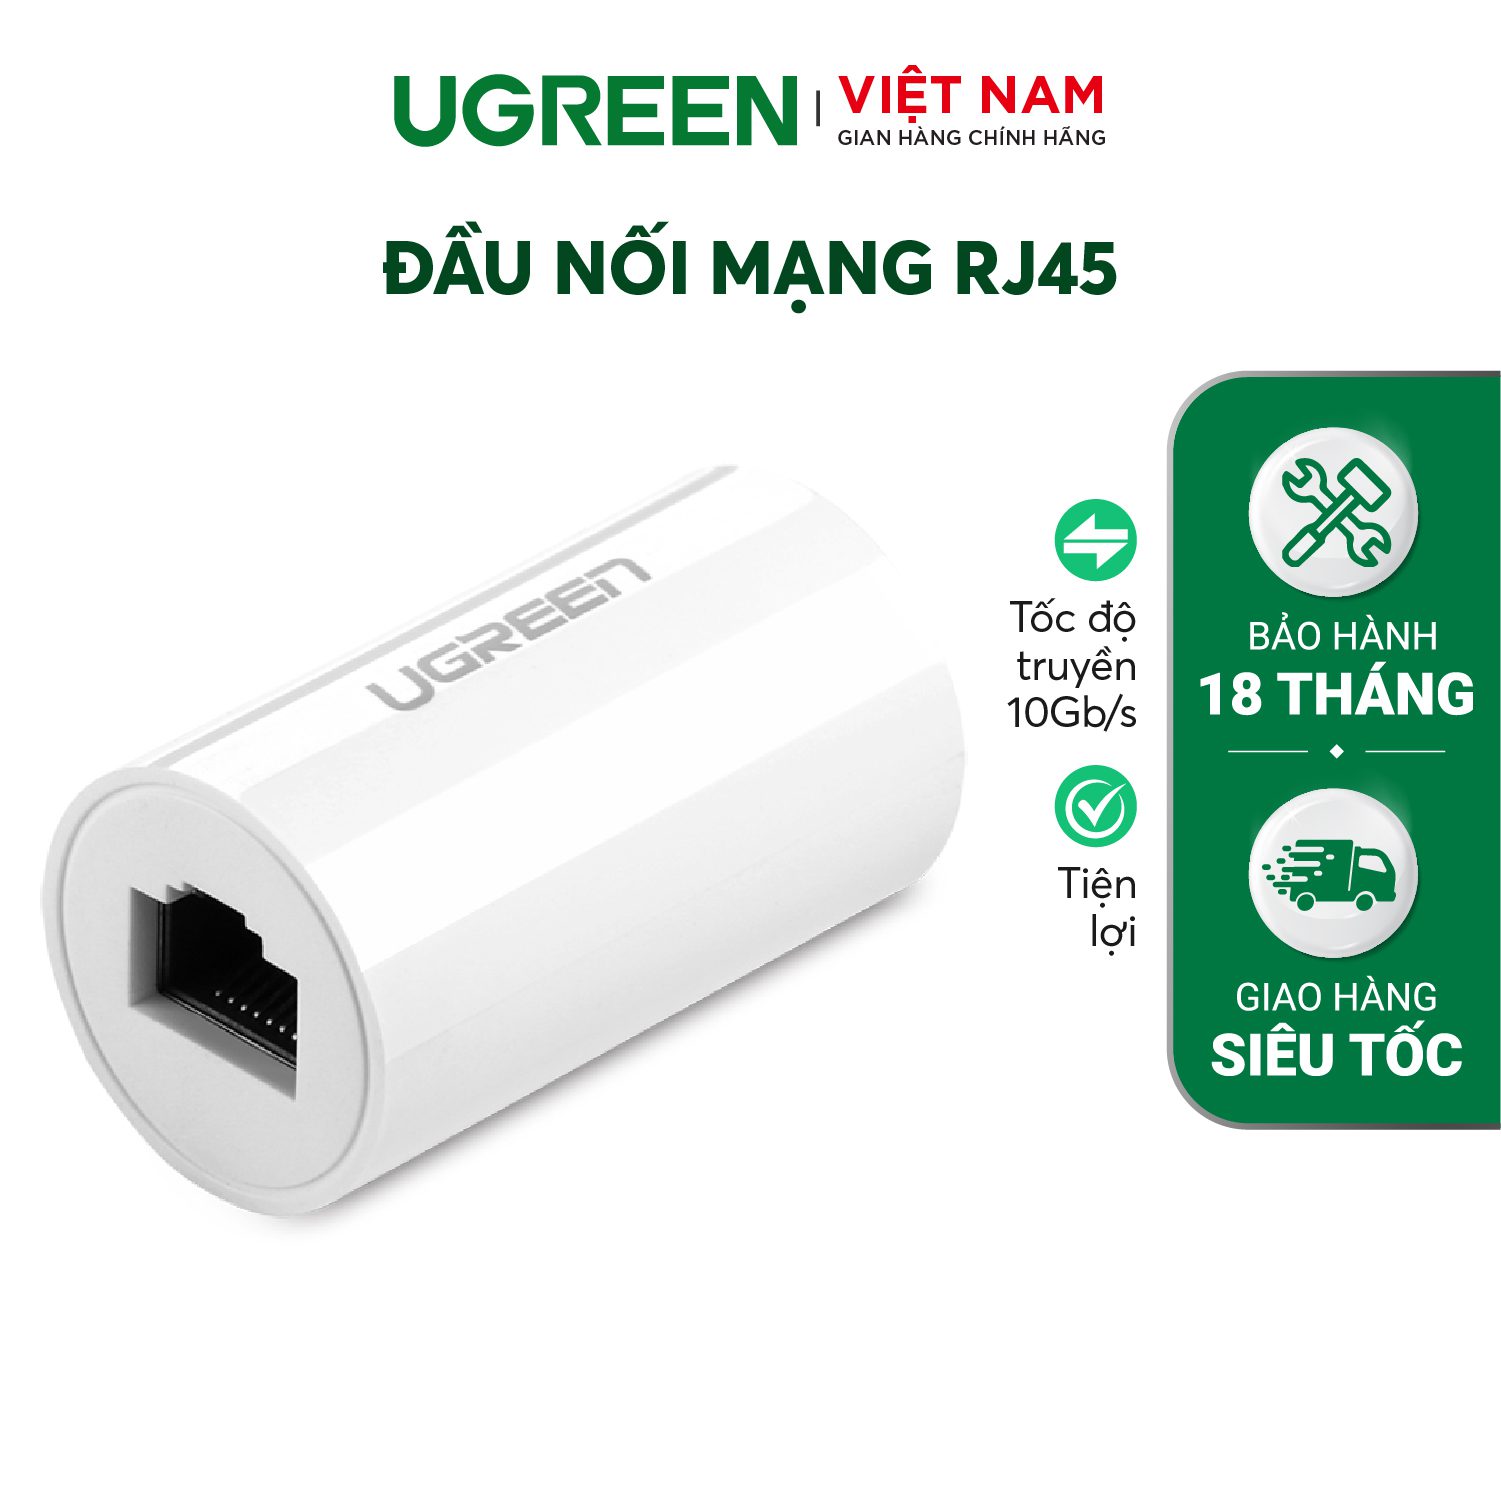 Đầu nối mạng RJ 45 cái sang cái thiết kế đẹp mắt UGREEN 20391 – Ugreen Việt Nam